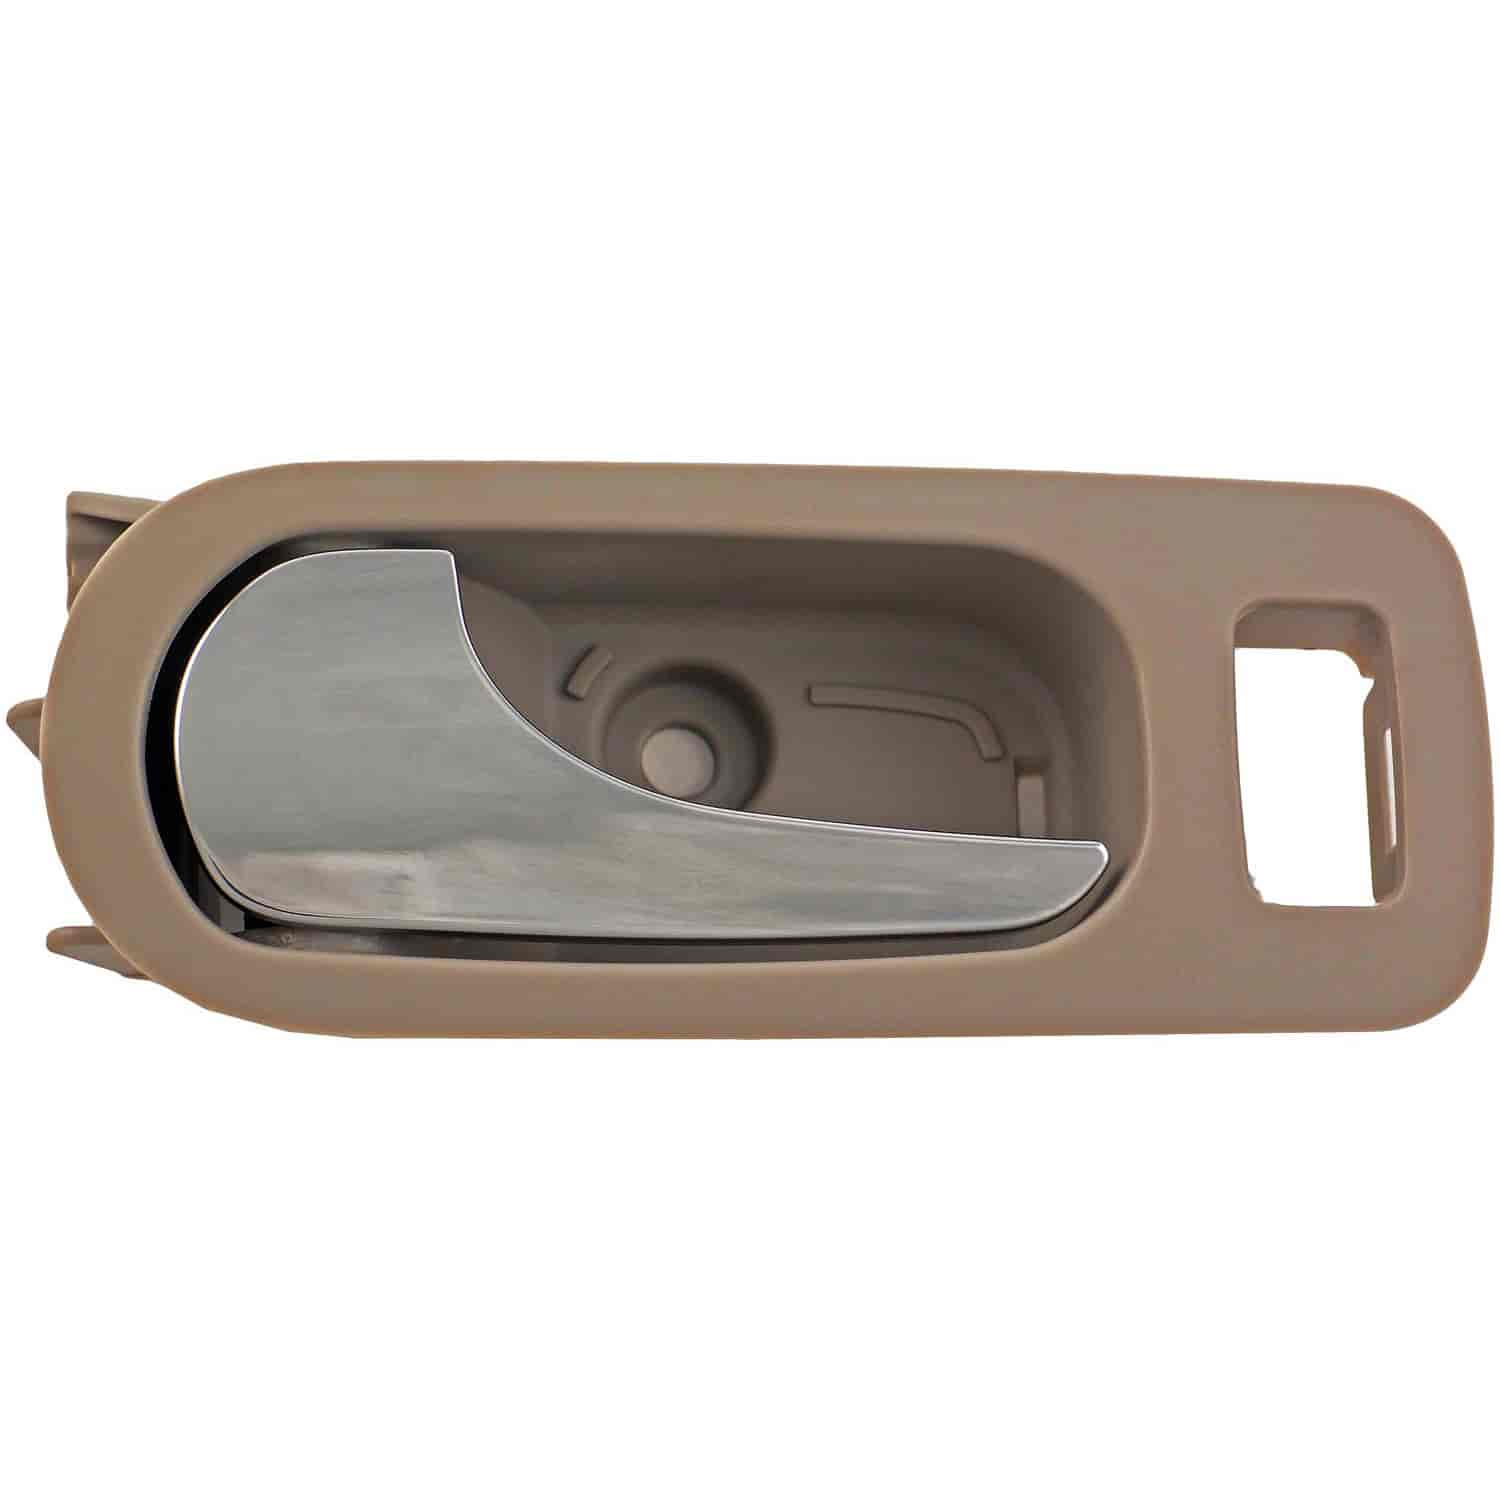 Interior Door Handle - Rear Left - Chrome Lever+Light Gray Titanium